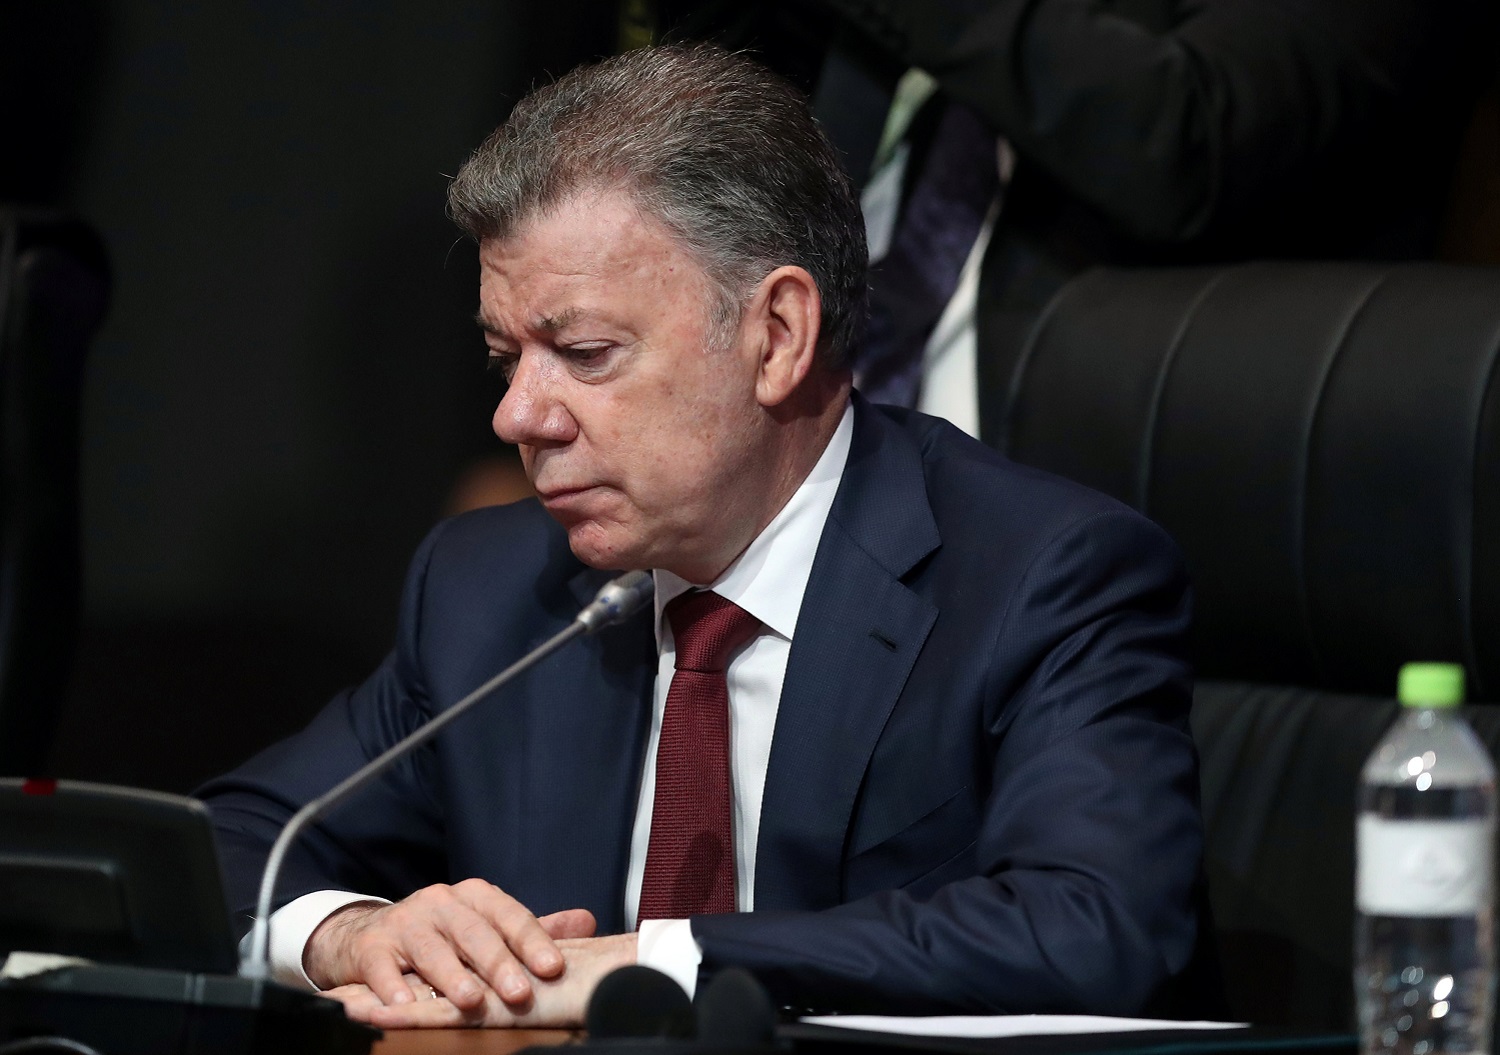 Santos envía desde Berlín mensaje de optimismo en reinicio de diálogo con ELN